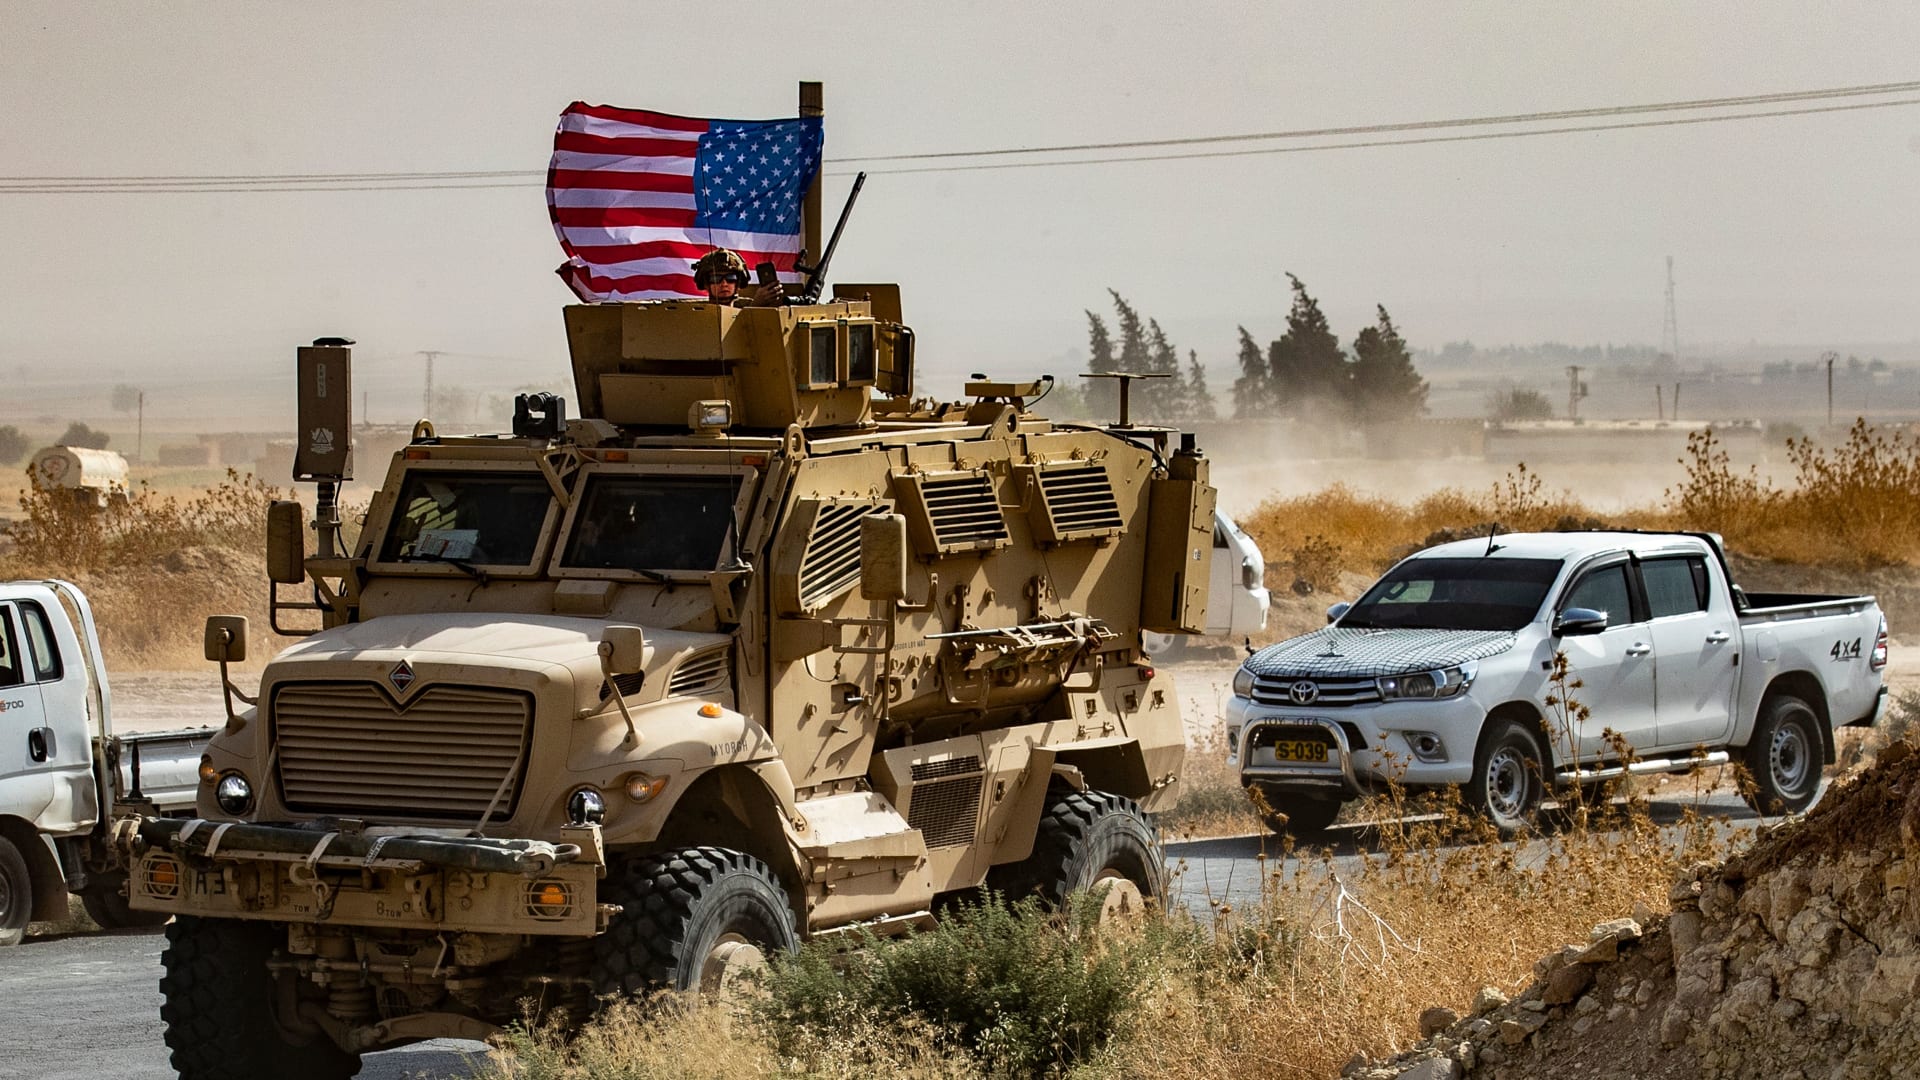 كيف يهدد انسحاب أمريكا أمام تركيا من شمال سوريا بعودة داعش؟